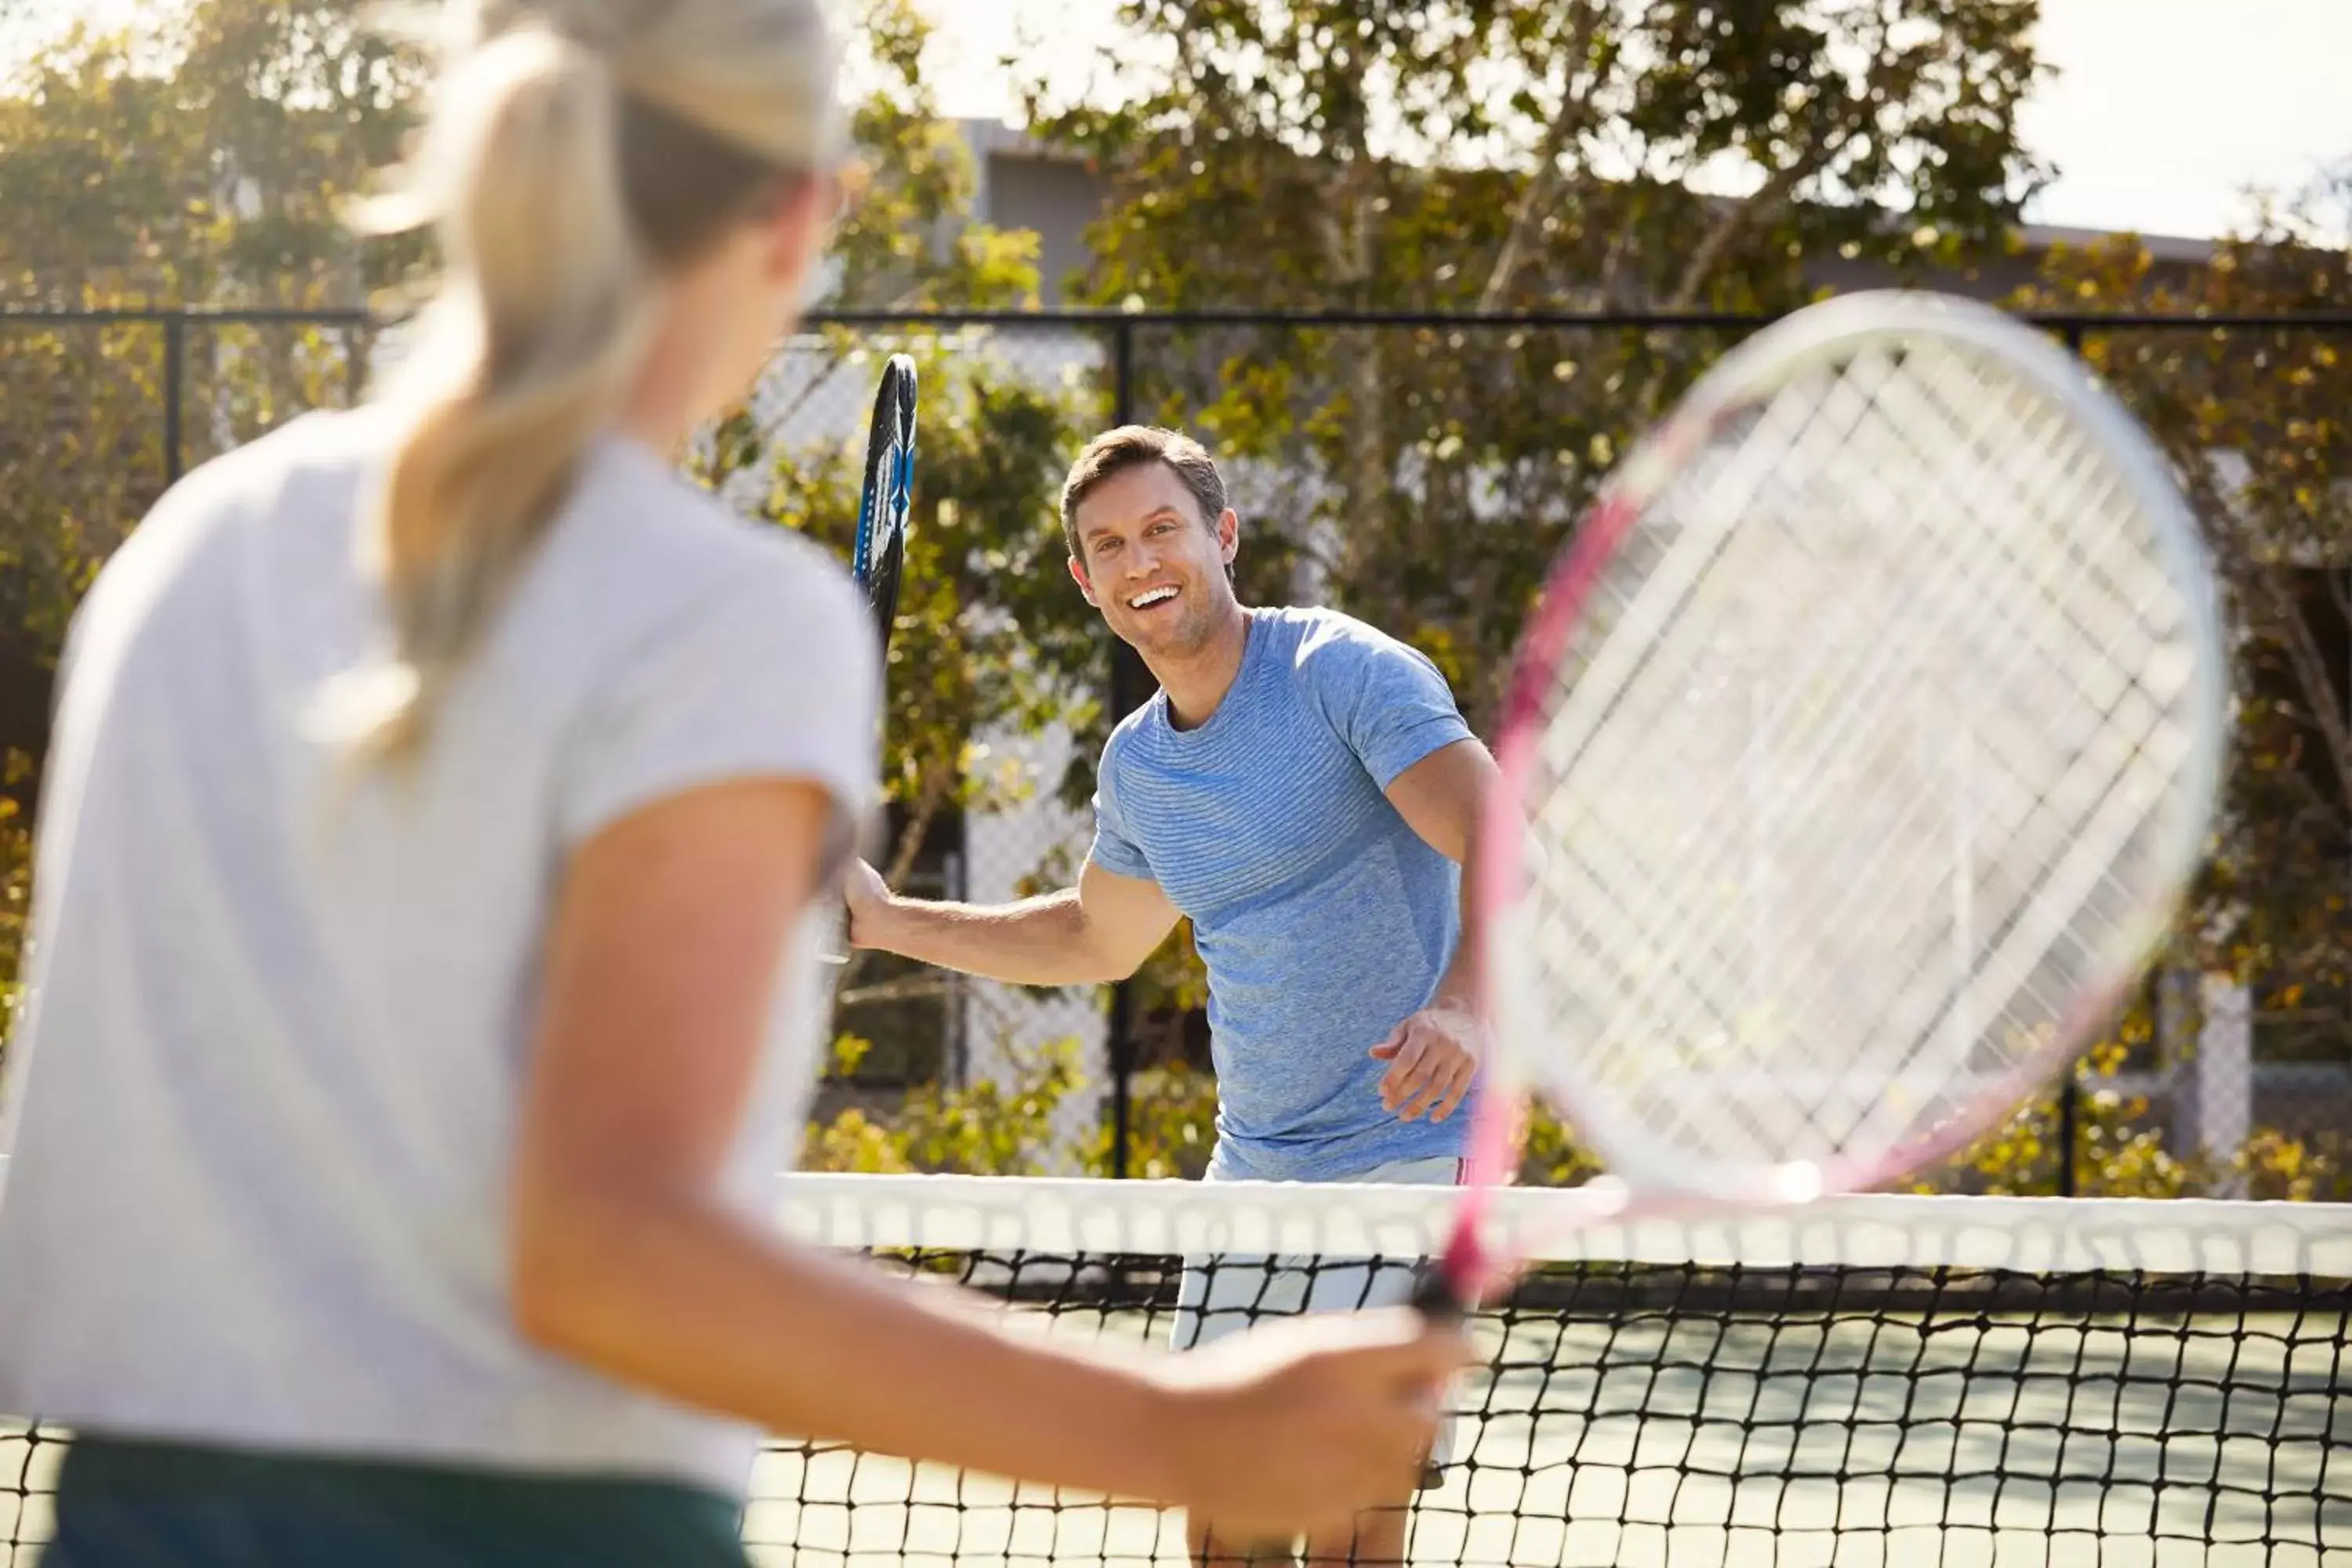 Tennis court in RACV Noosa Resort